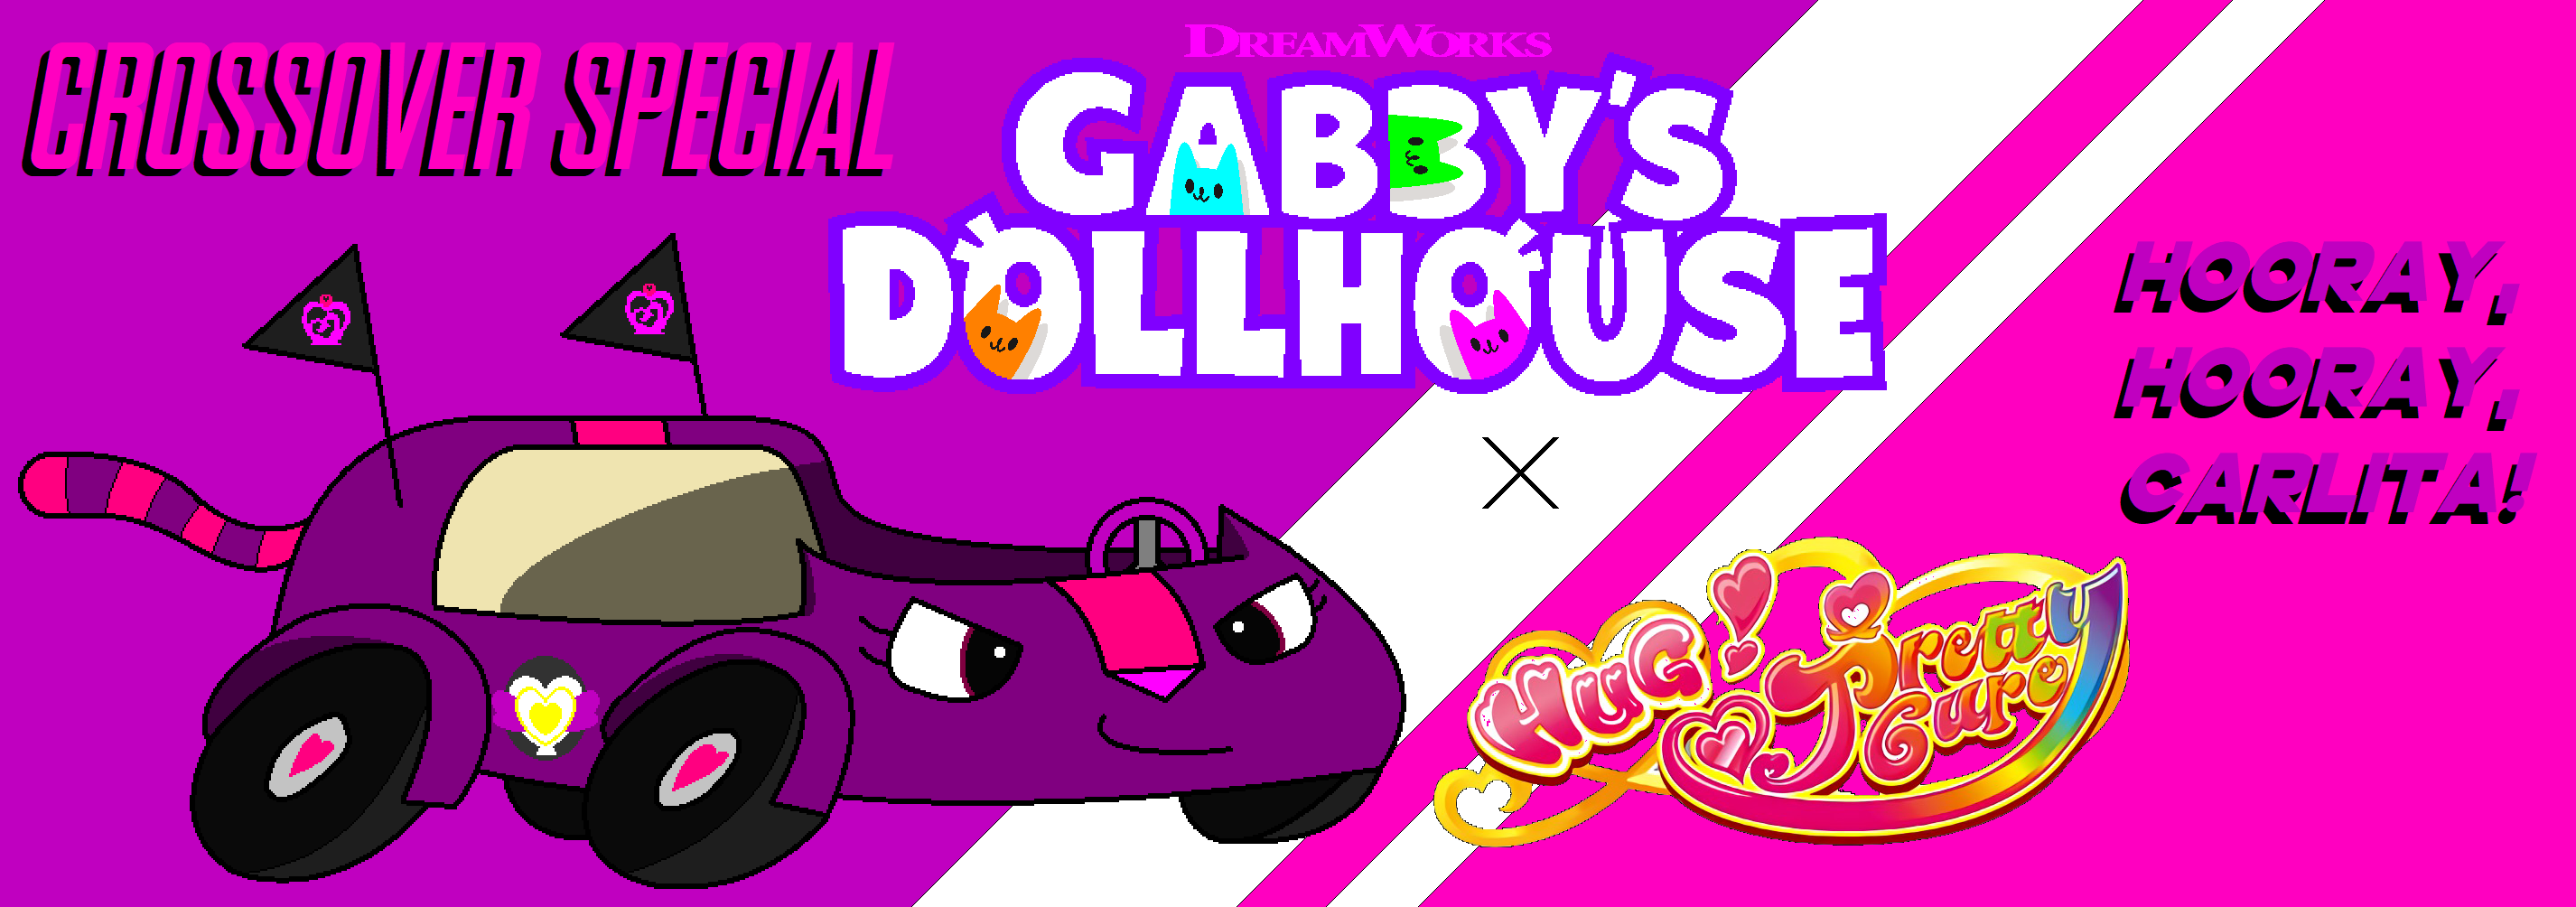 Gabby's Dollhouse Charm Bracelet Treasure Hunt (TV Episode 2023